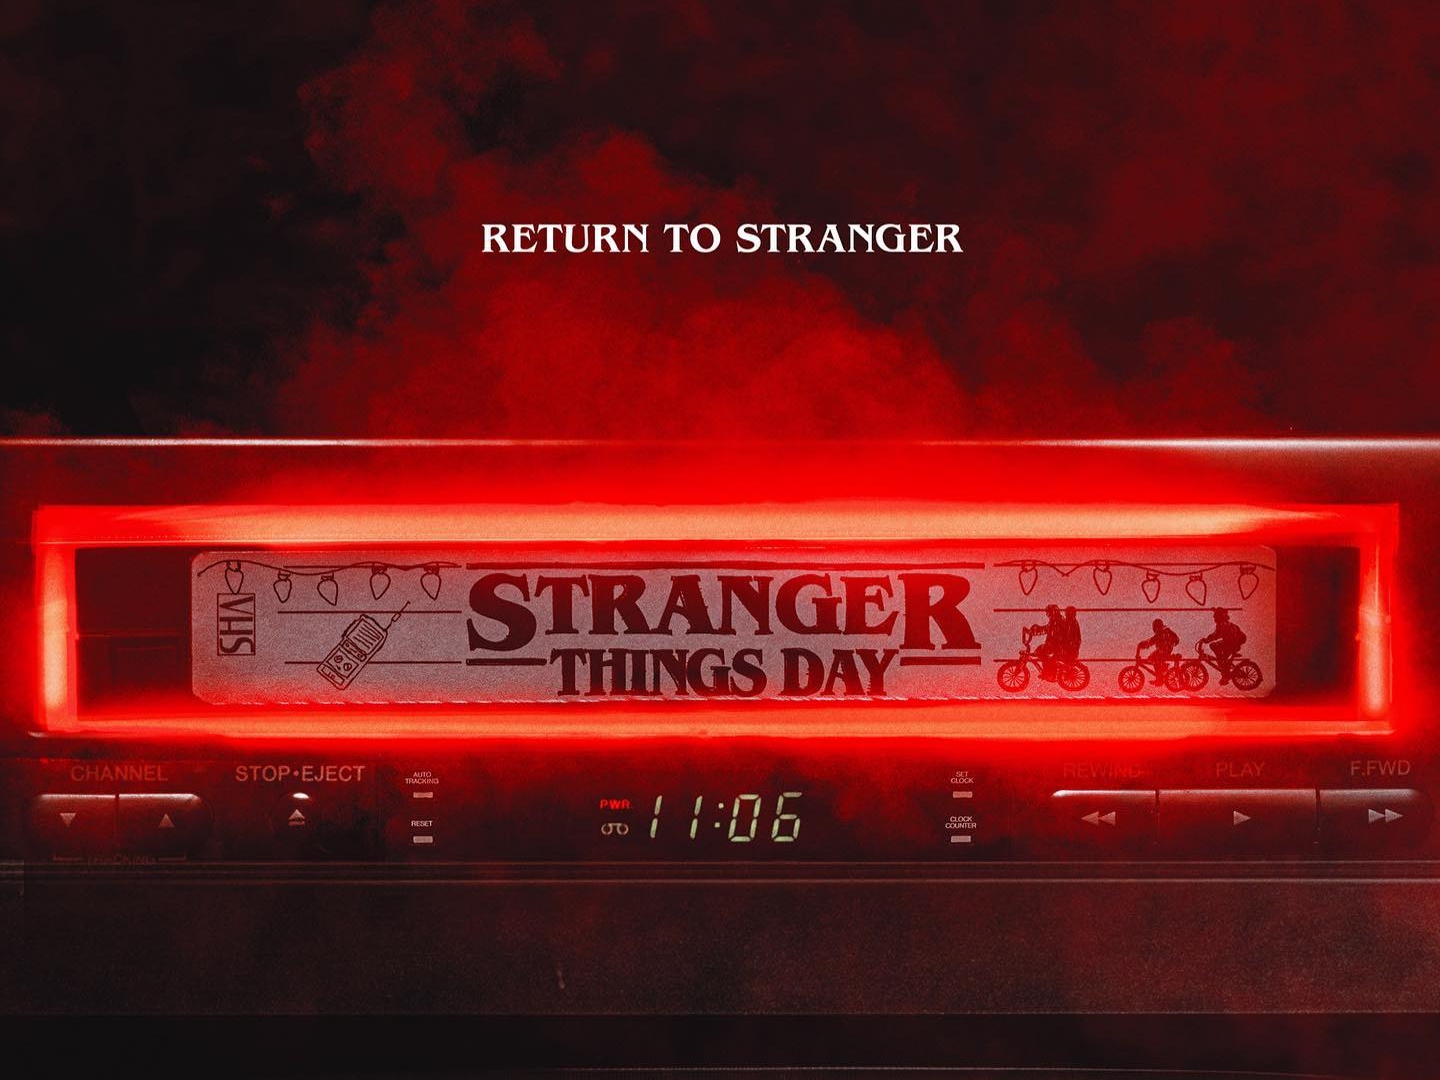 Stranger Things Day: Por que a data é comemorada no dia 6 de novembro?